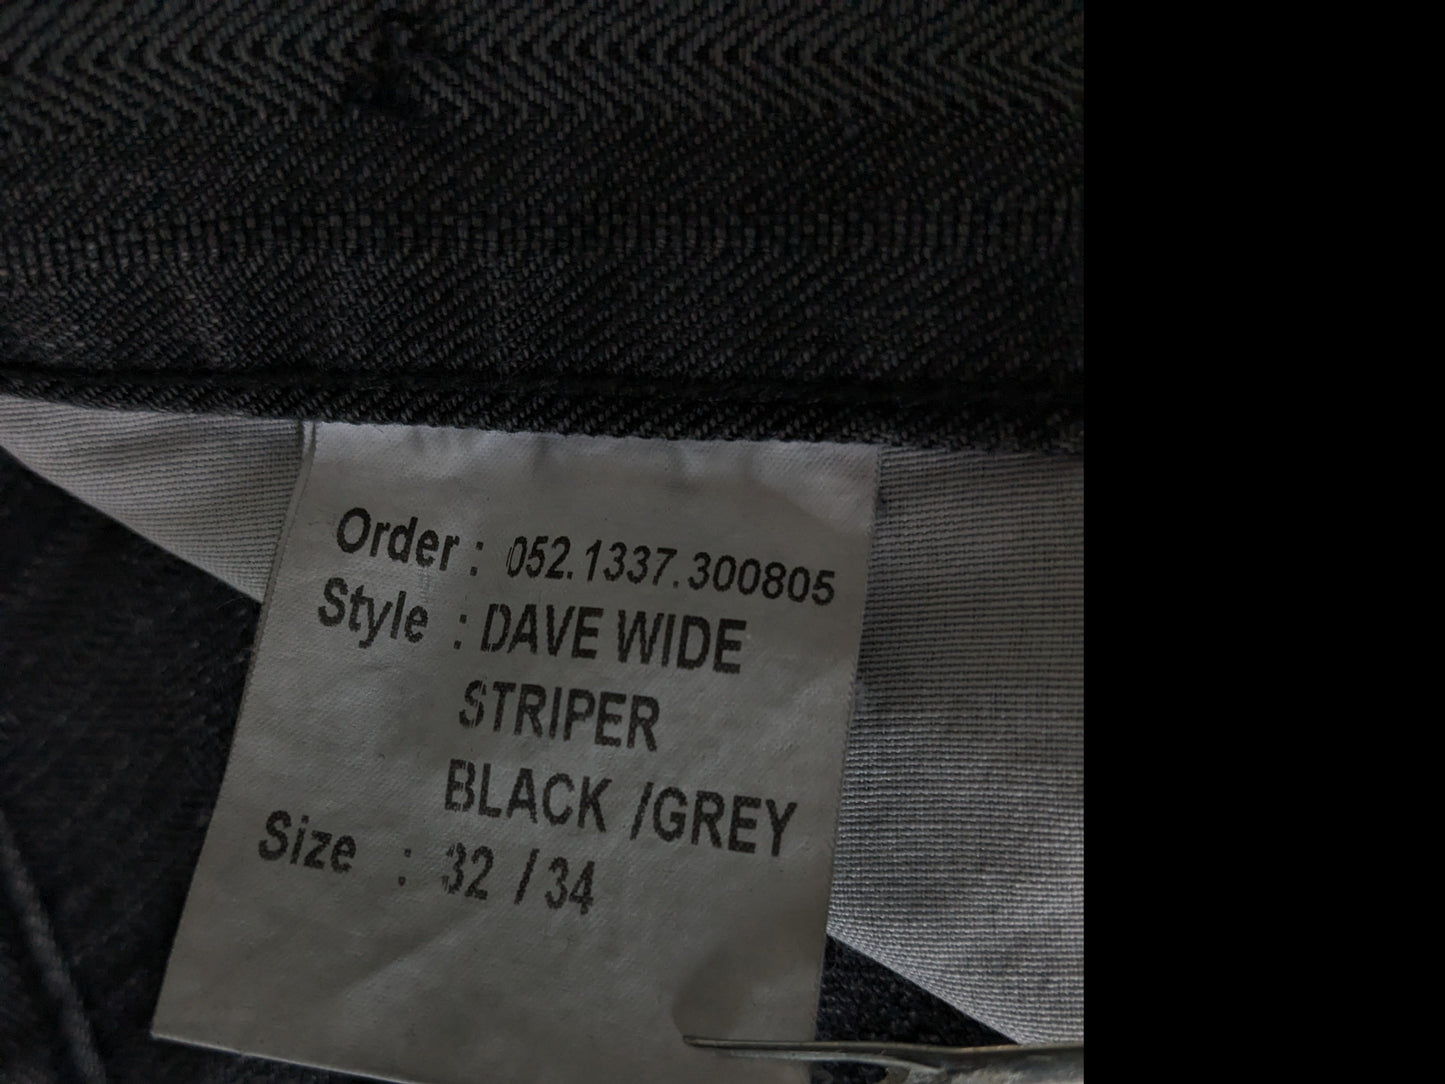 Jeans à édition culte avec applications de bretelles. Black gris rayé. Taille W32 - L28.